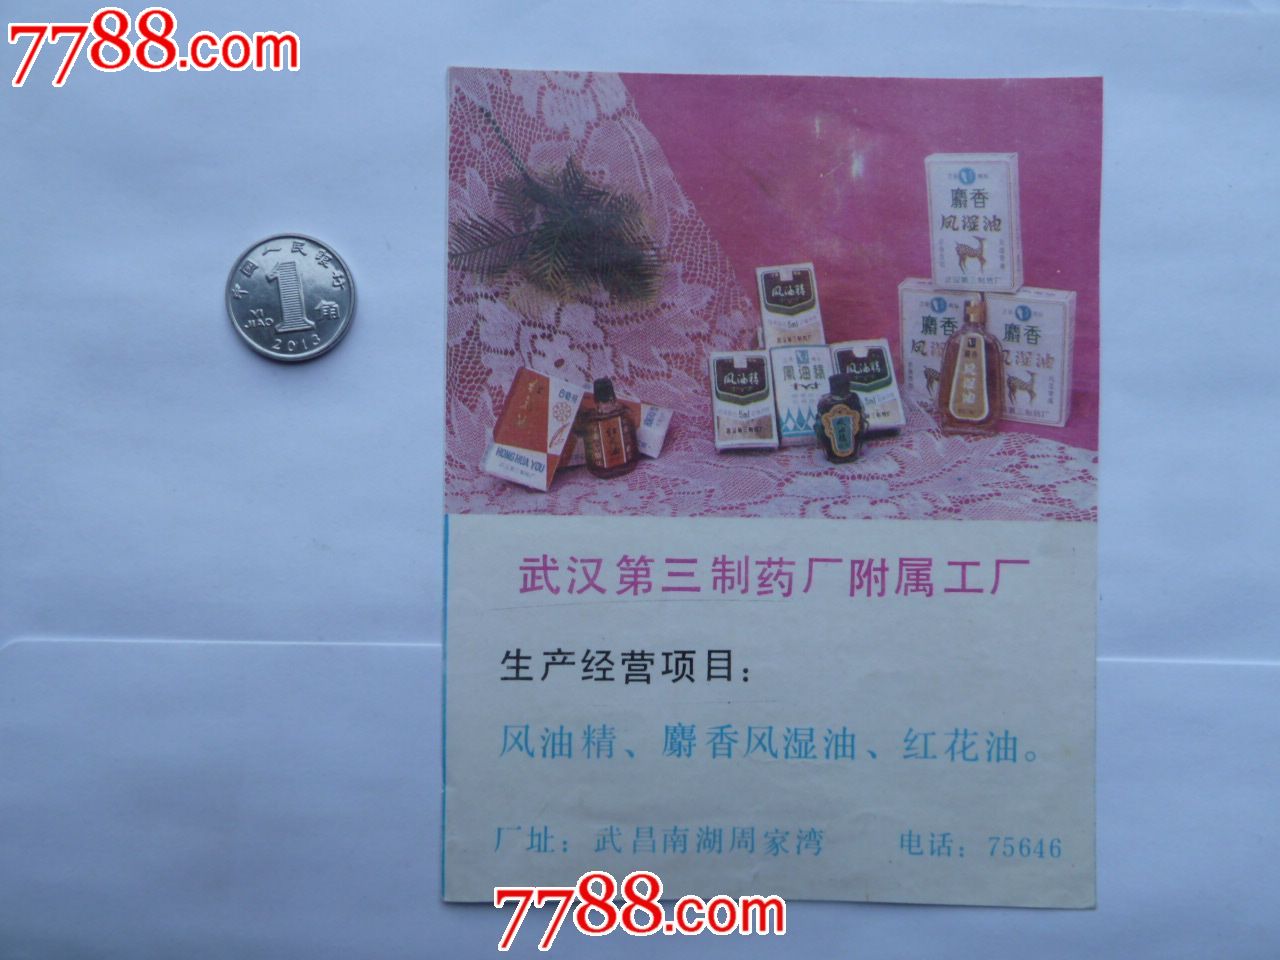 武汉第三制药厂附属工厂宣传卡1枚-价格:2元-s